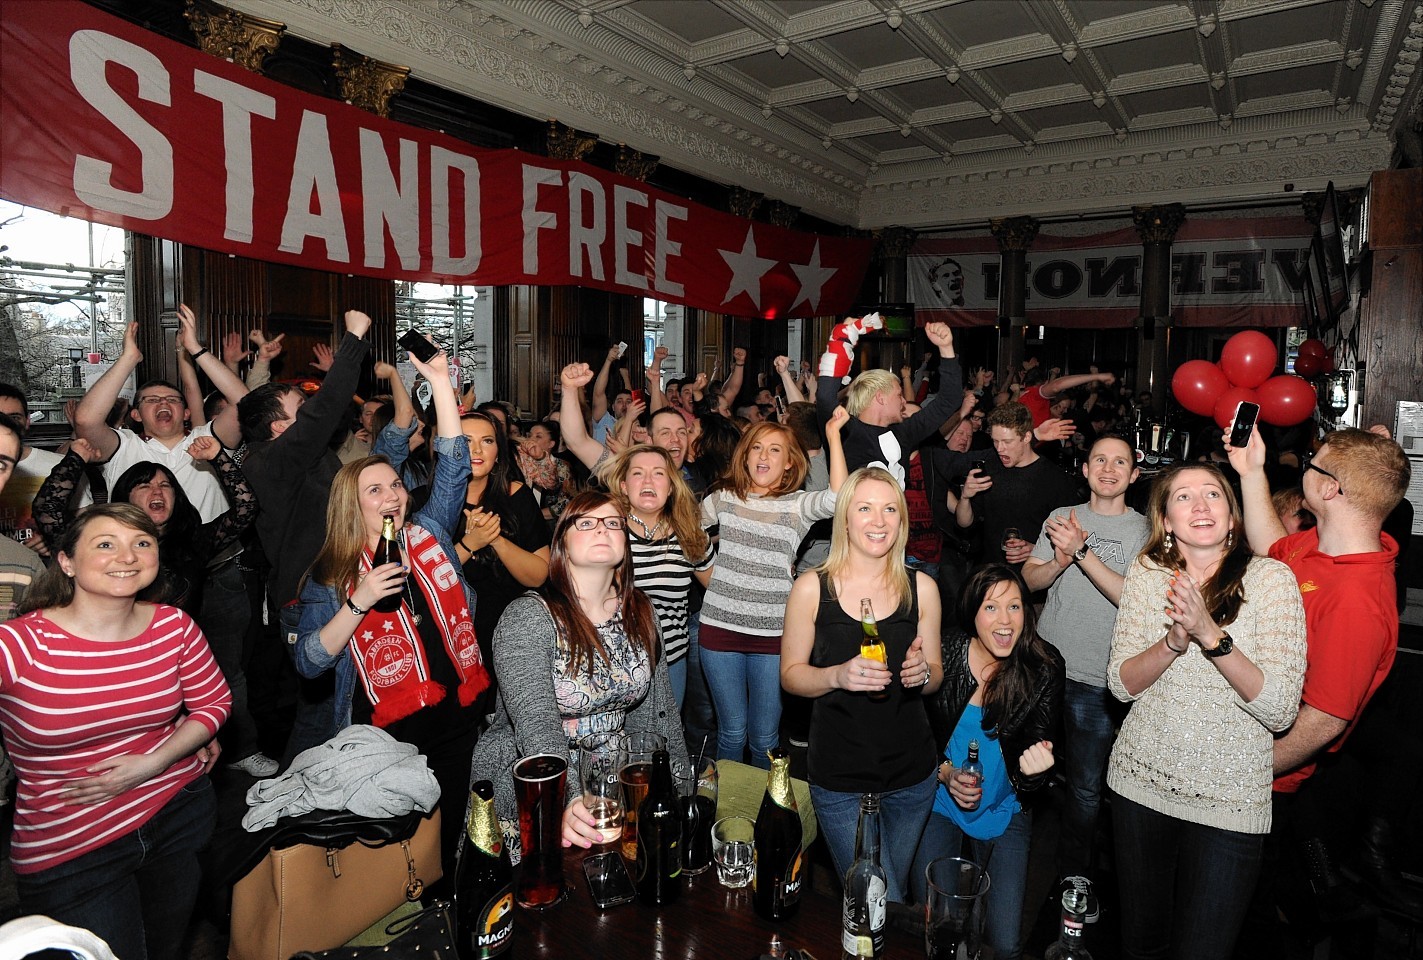 Aberdeen fans celebrate